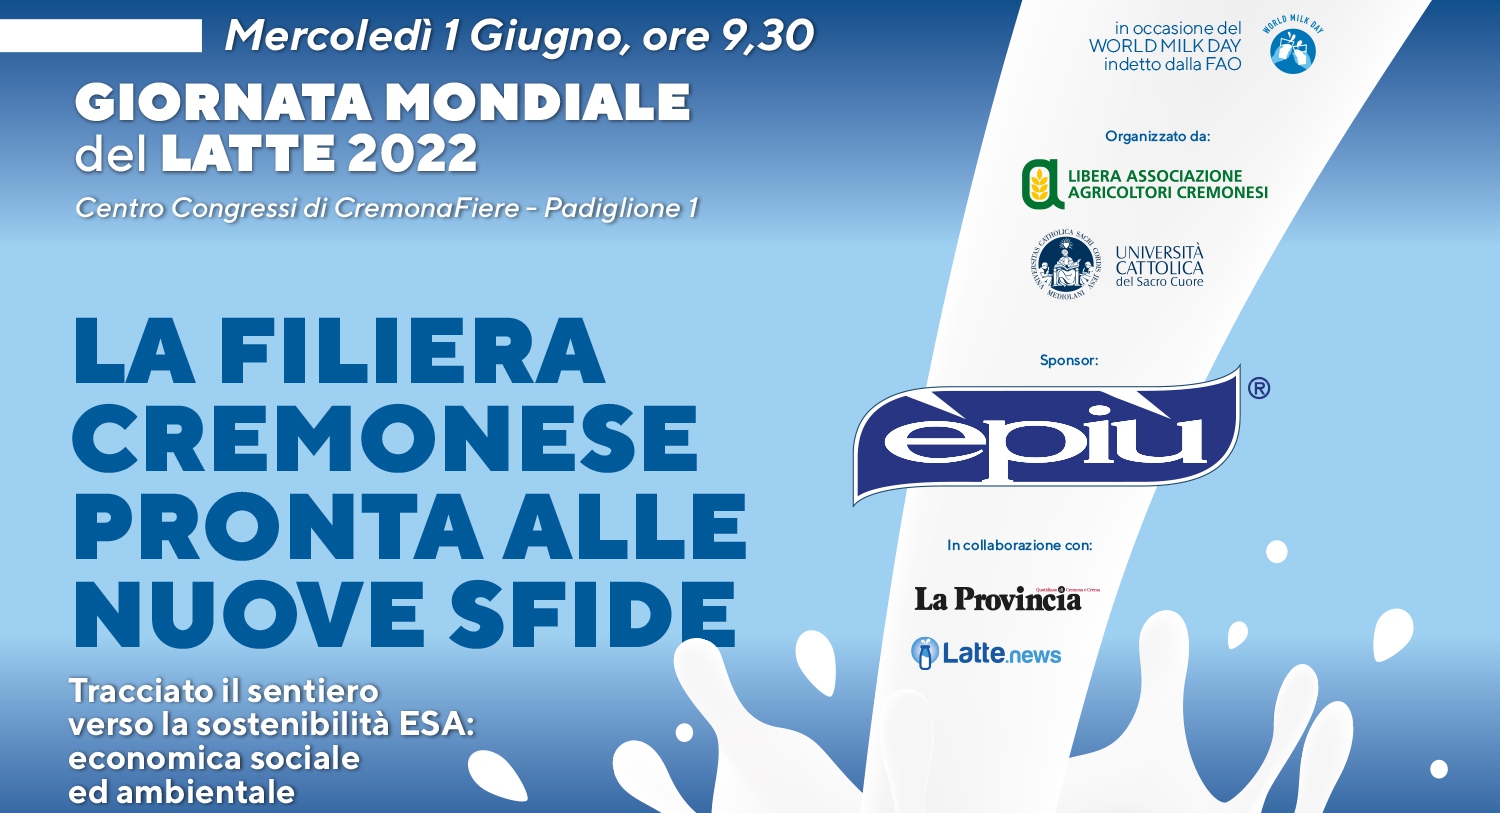 Giornata Mondiale del Latte 2022: le nuove sfide della filiera lattiero casearia cremonese